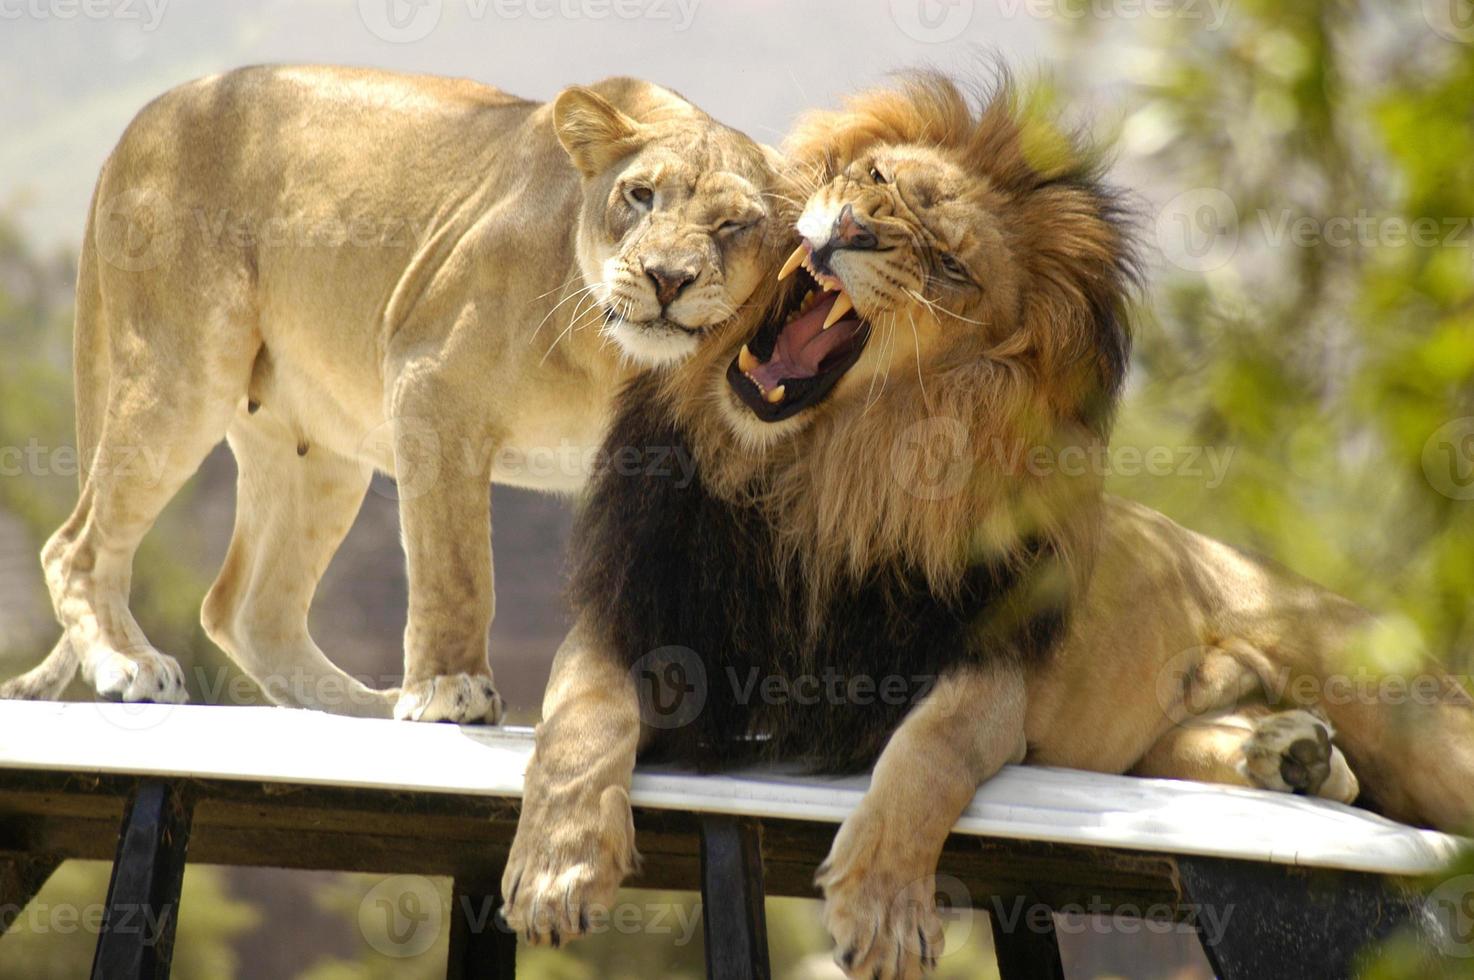 lion mâle en colère contre une lionne femelle essayant de lui montrer de l'affection. photo